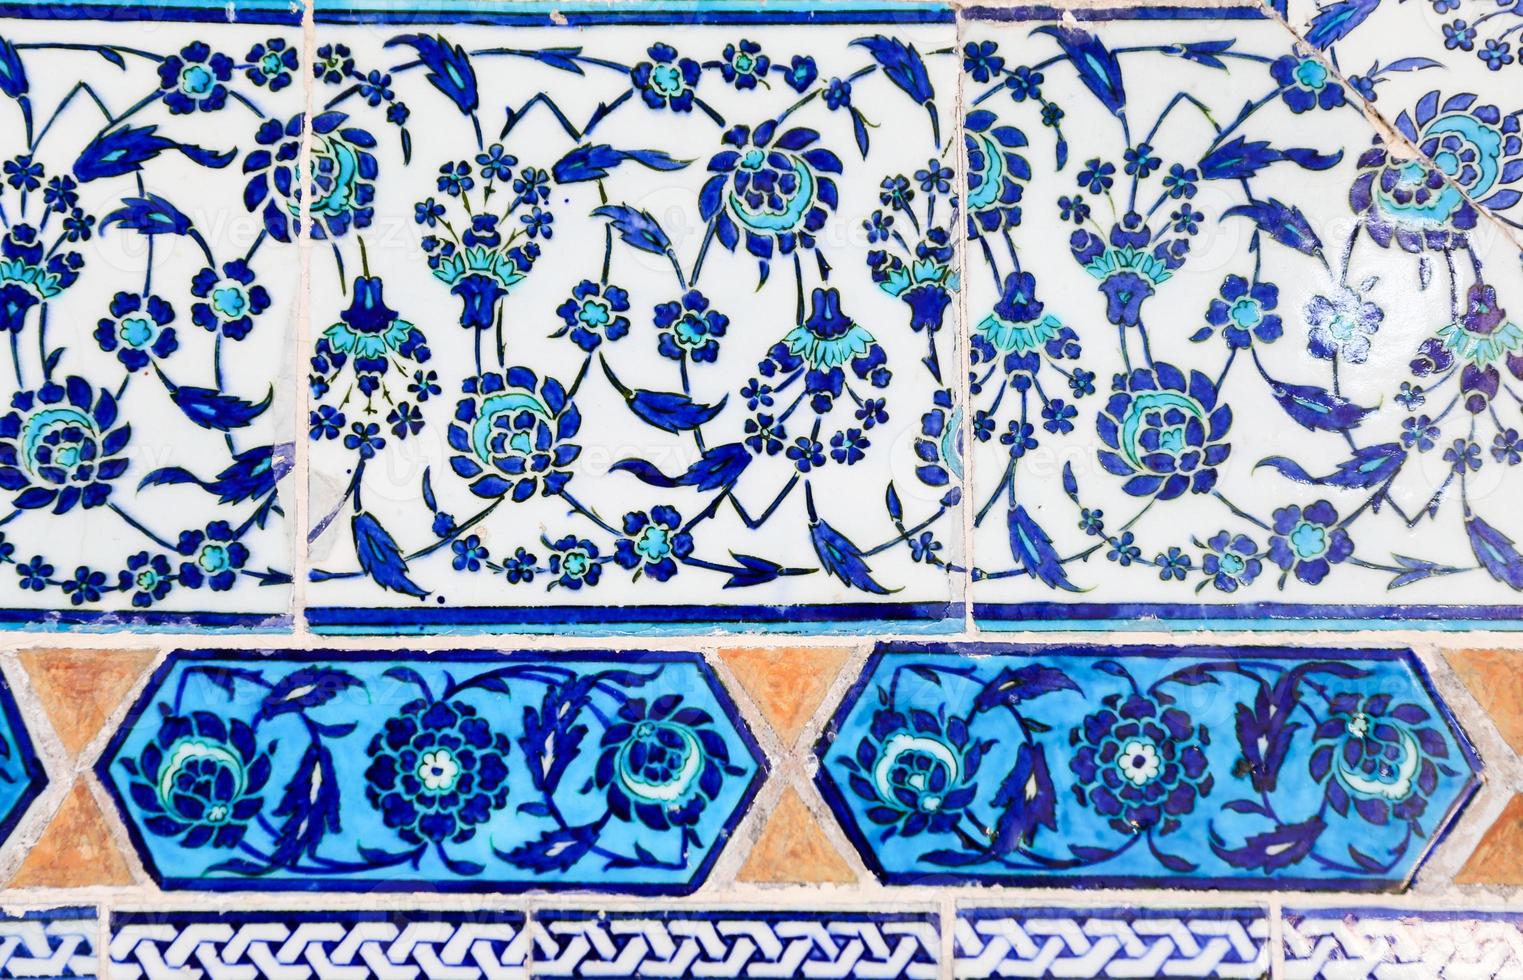 azulejos azules en el palacio de topkapi foto